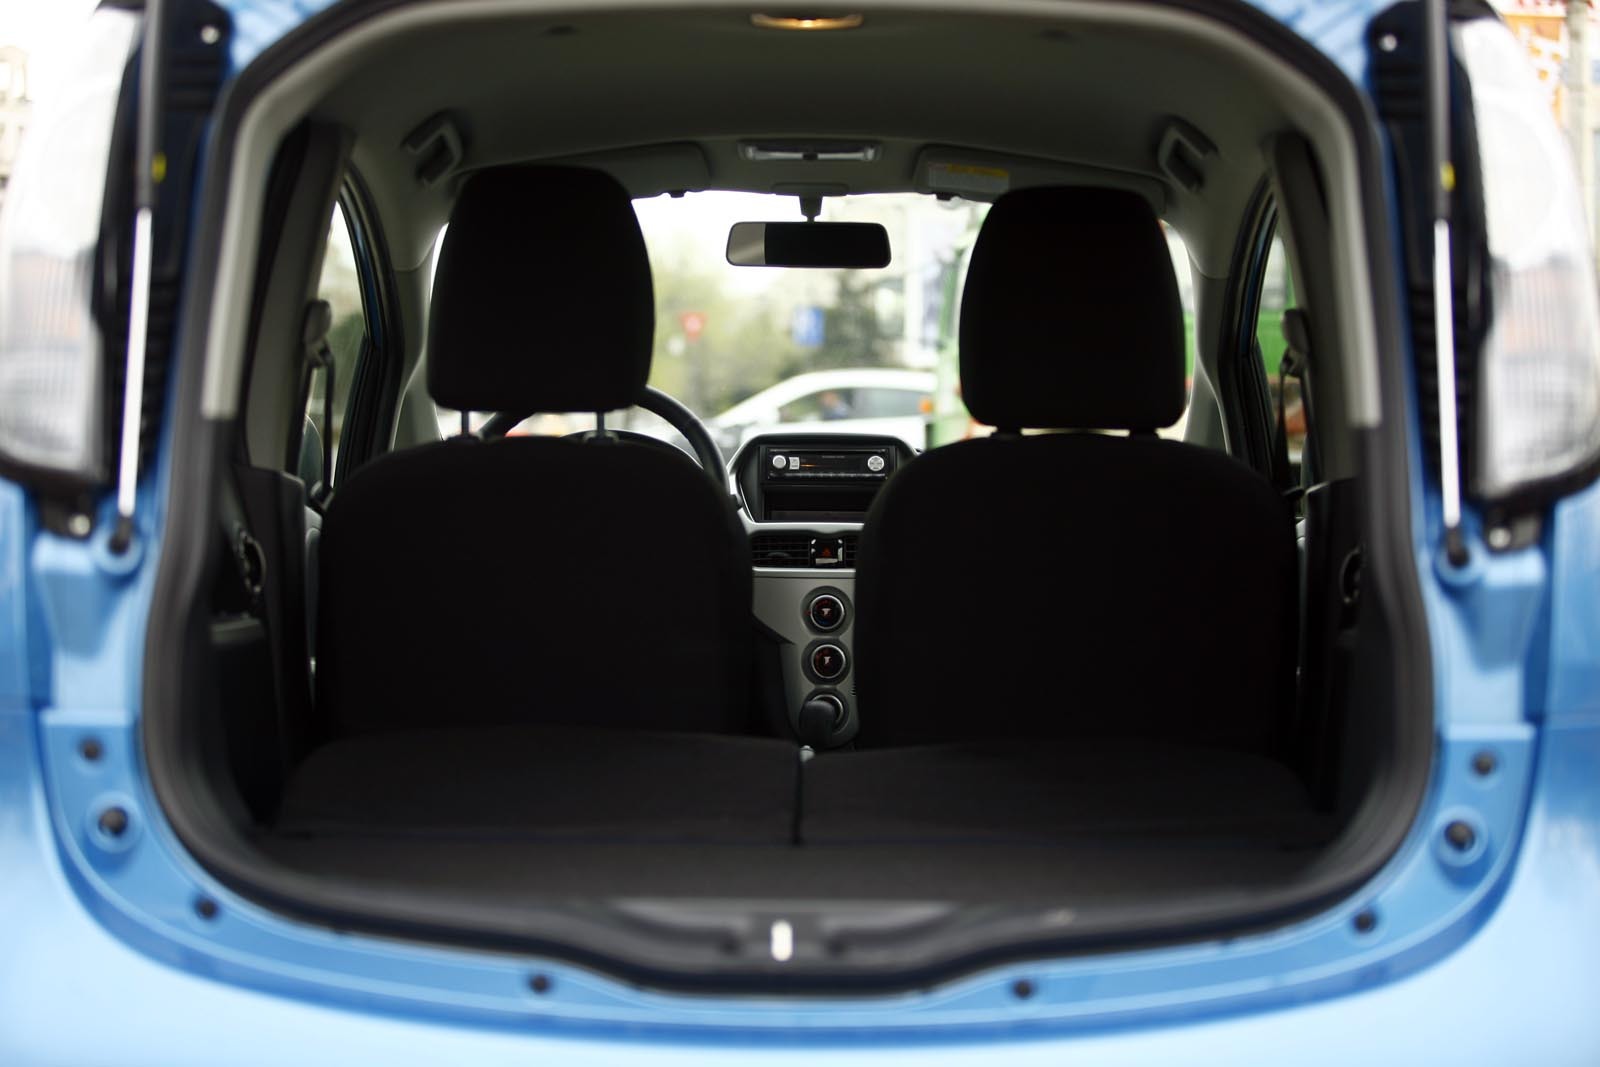 Raportat la gabaritul exterior, Mitsubishi i-MiEV ofera un spatiu interior foarte generos